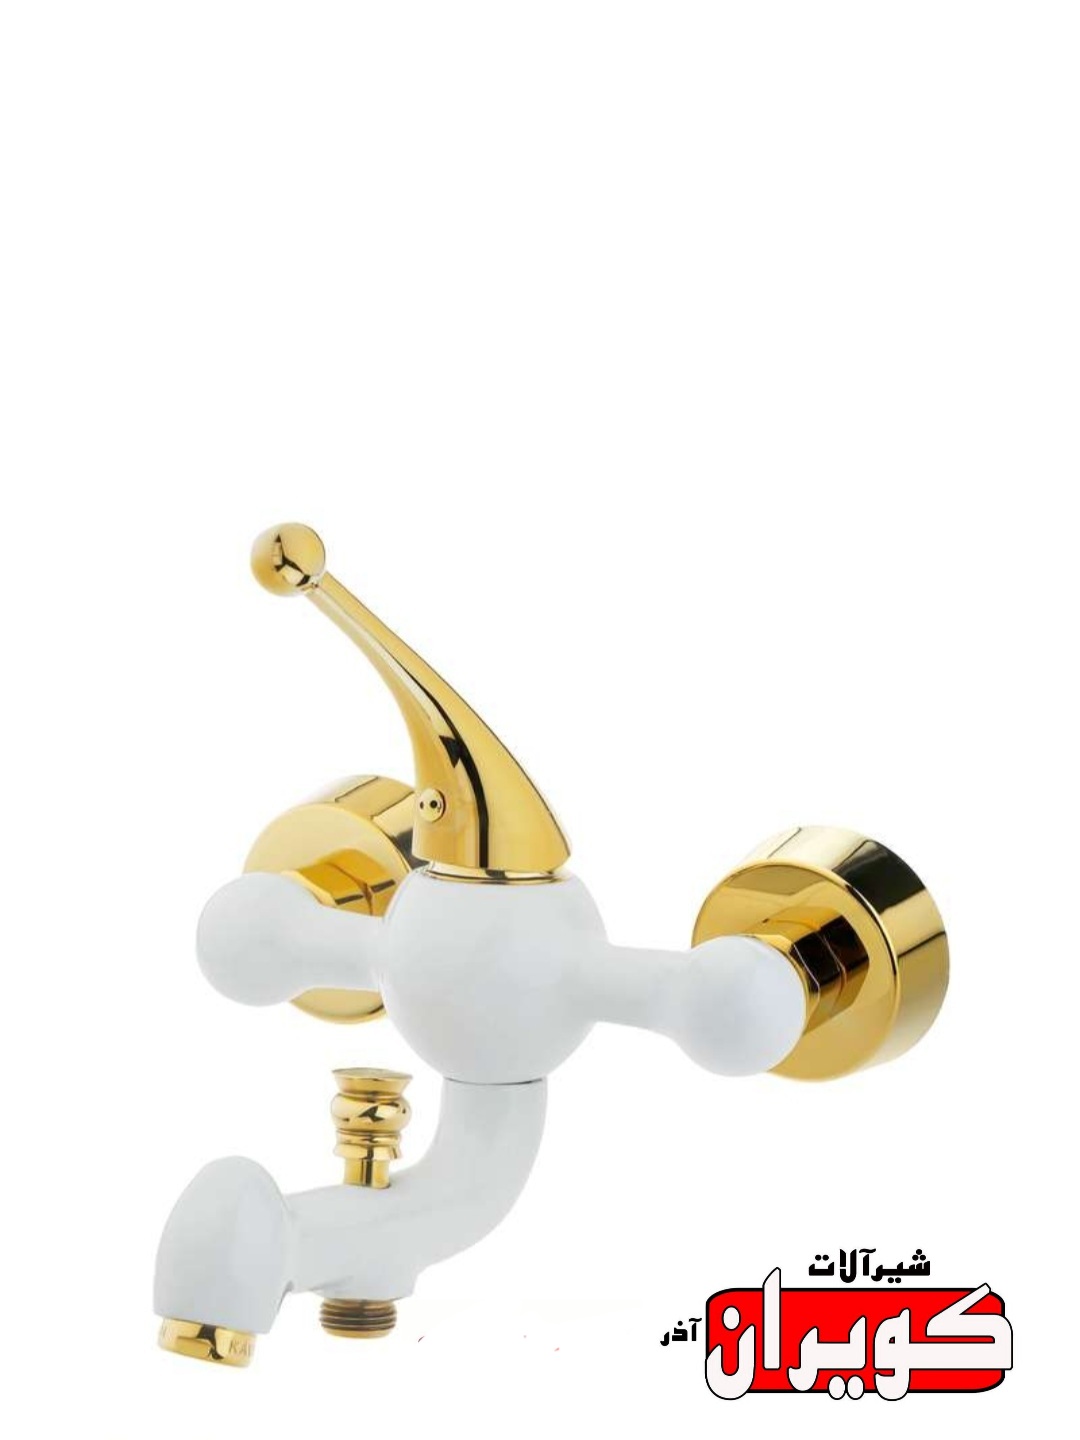 شیرآلات کویران آذر/شیر حمام مدل پاریس/سفید طلایی